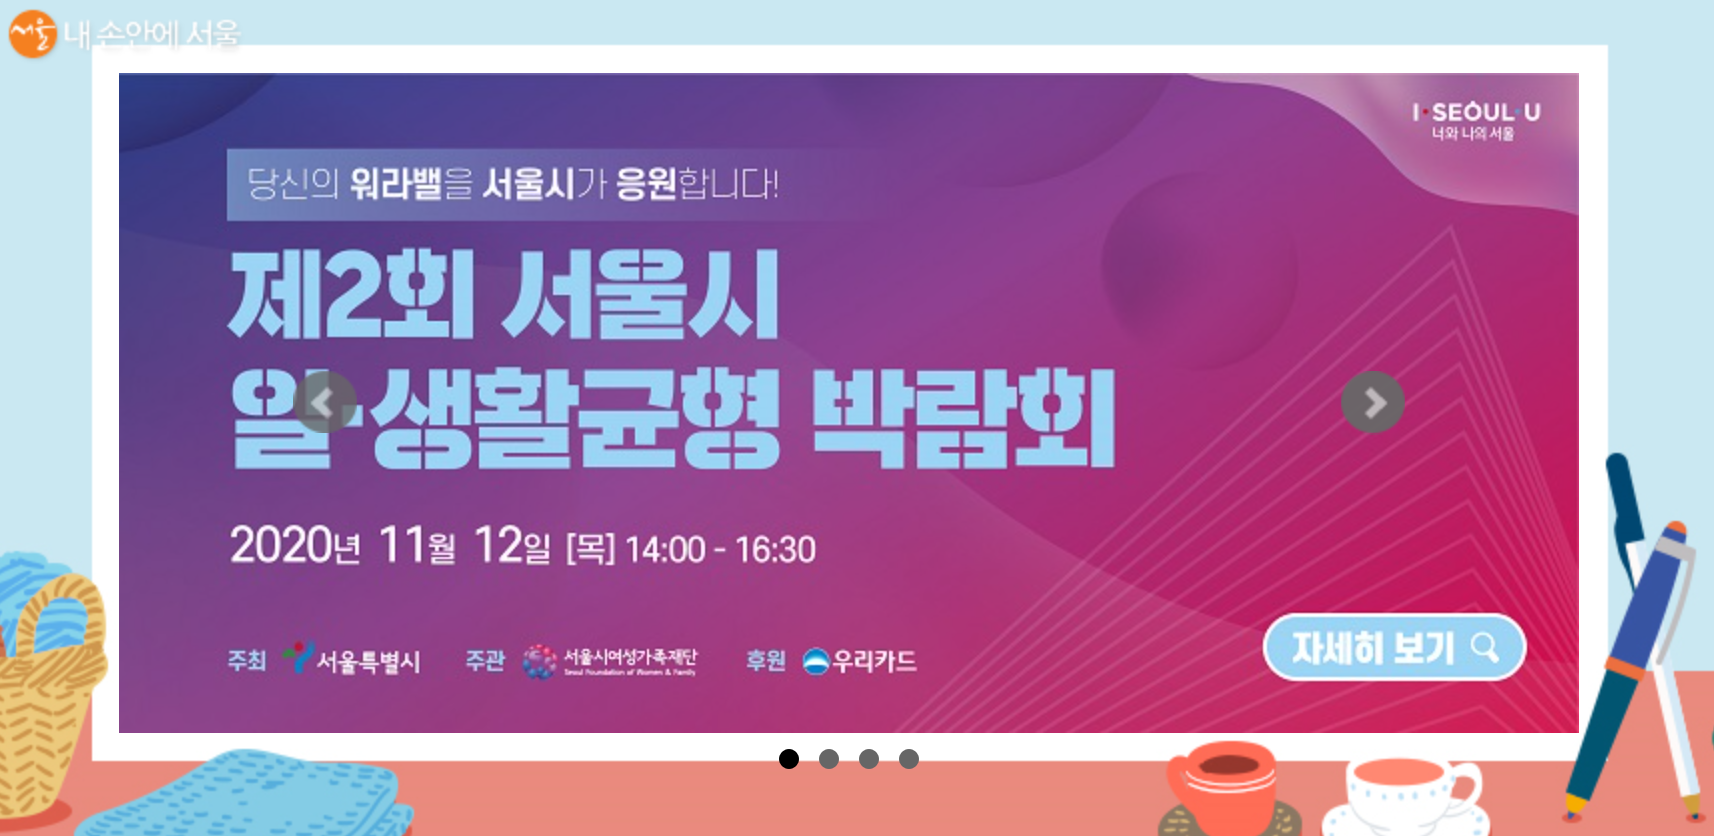 지난 11월 12일 ‘제2회 서울시 일？생활균형 박람회’가 개최되었다. 